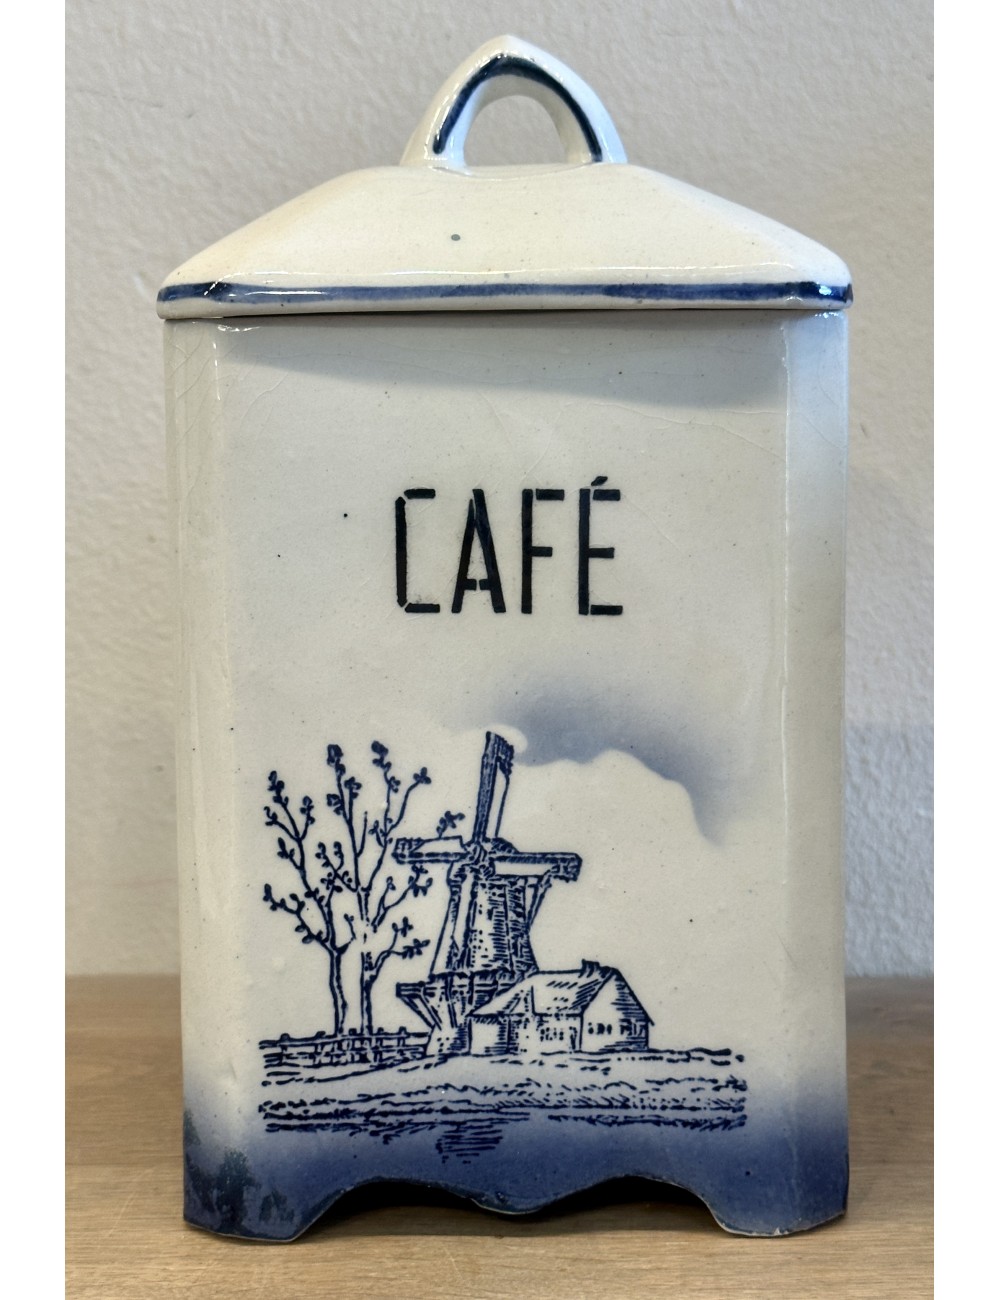 Voorraadpot - ongemerkt - blindmerk 275 - décor in blauw/wit van een molen, huis en bomen - opschrift CAFE